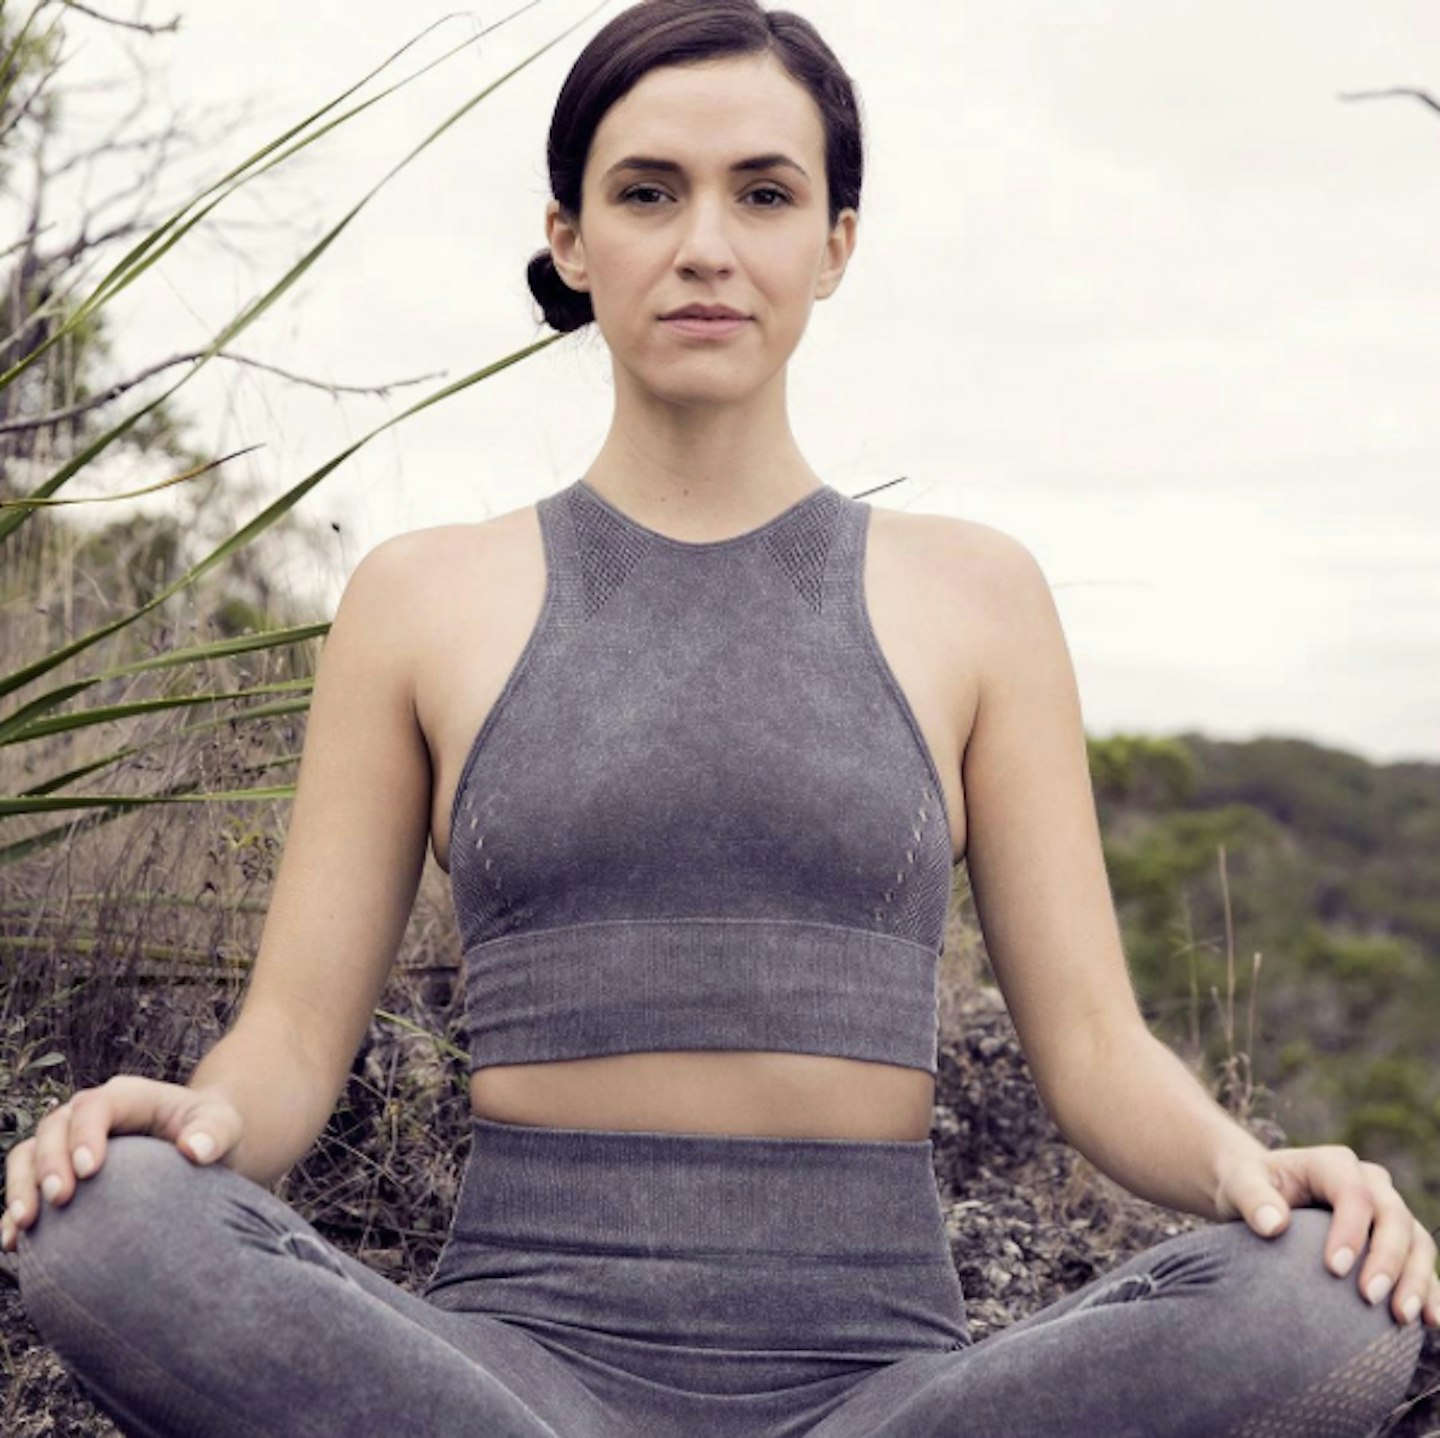 Watch Yoga With Adriene - True: A 30 Day Yoga Journey